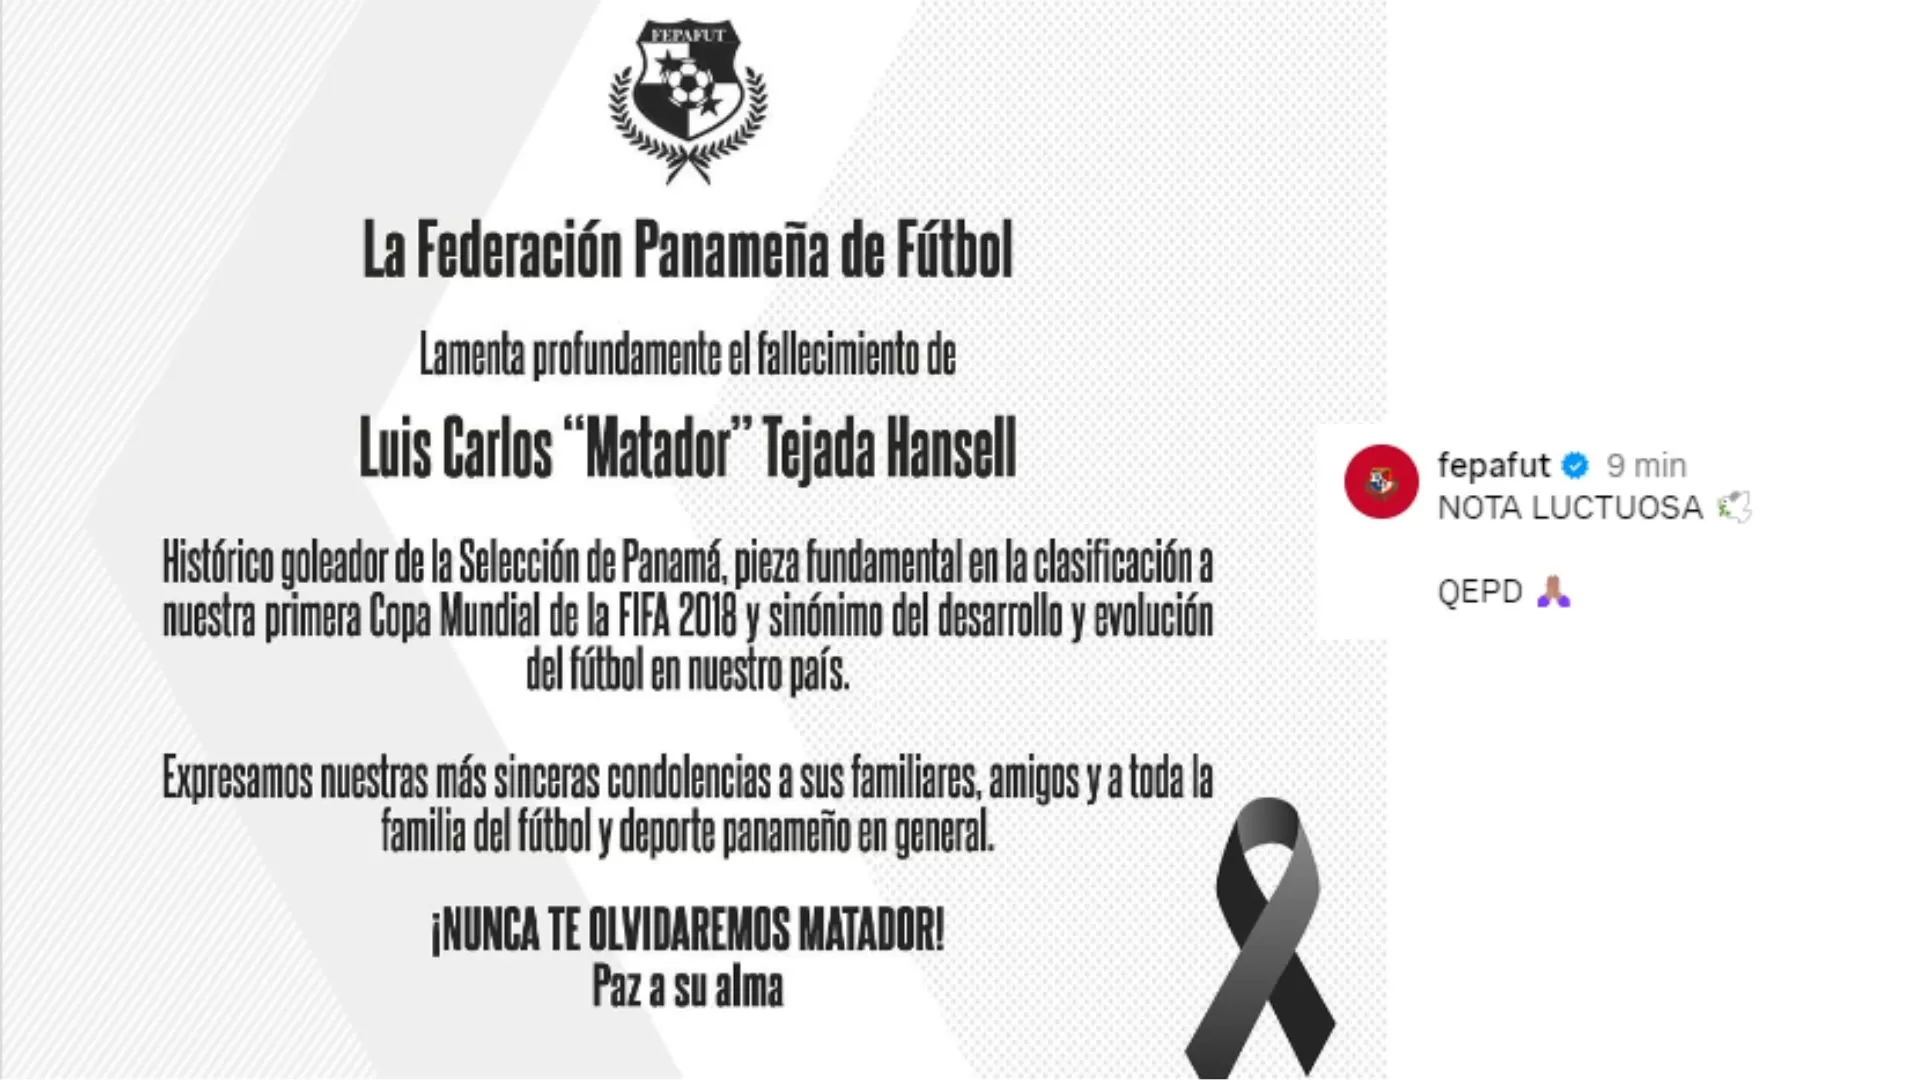 Mensaje publicado por la Federación Panameña de Fútbol sobre el deceso de Luis Tejada / Foto: fepafut